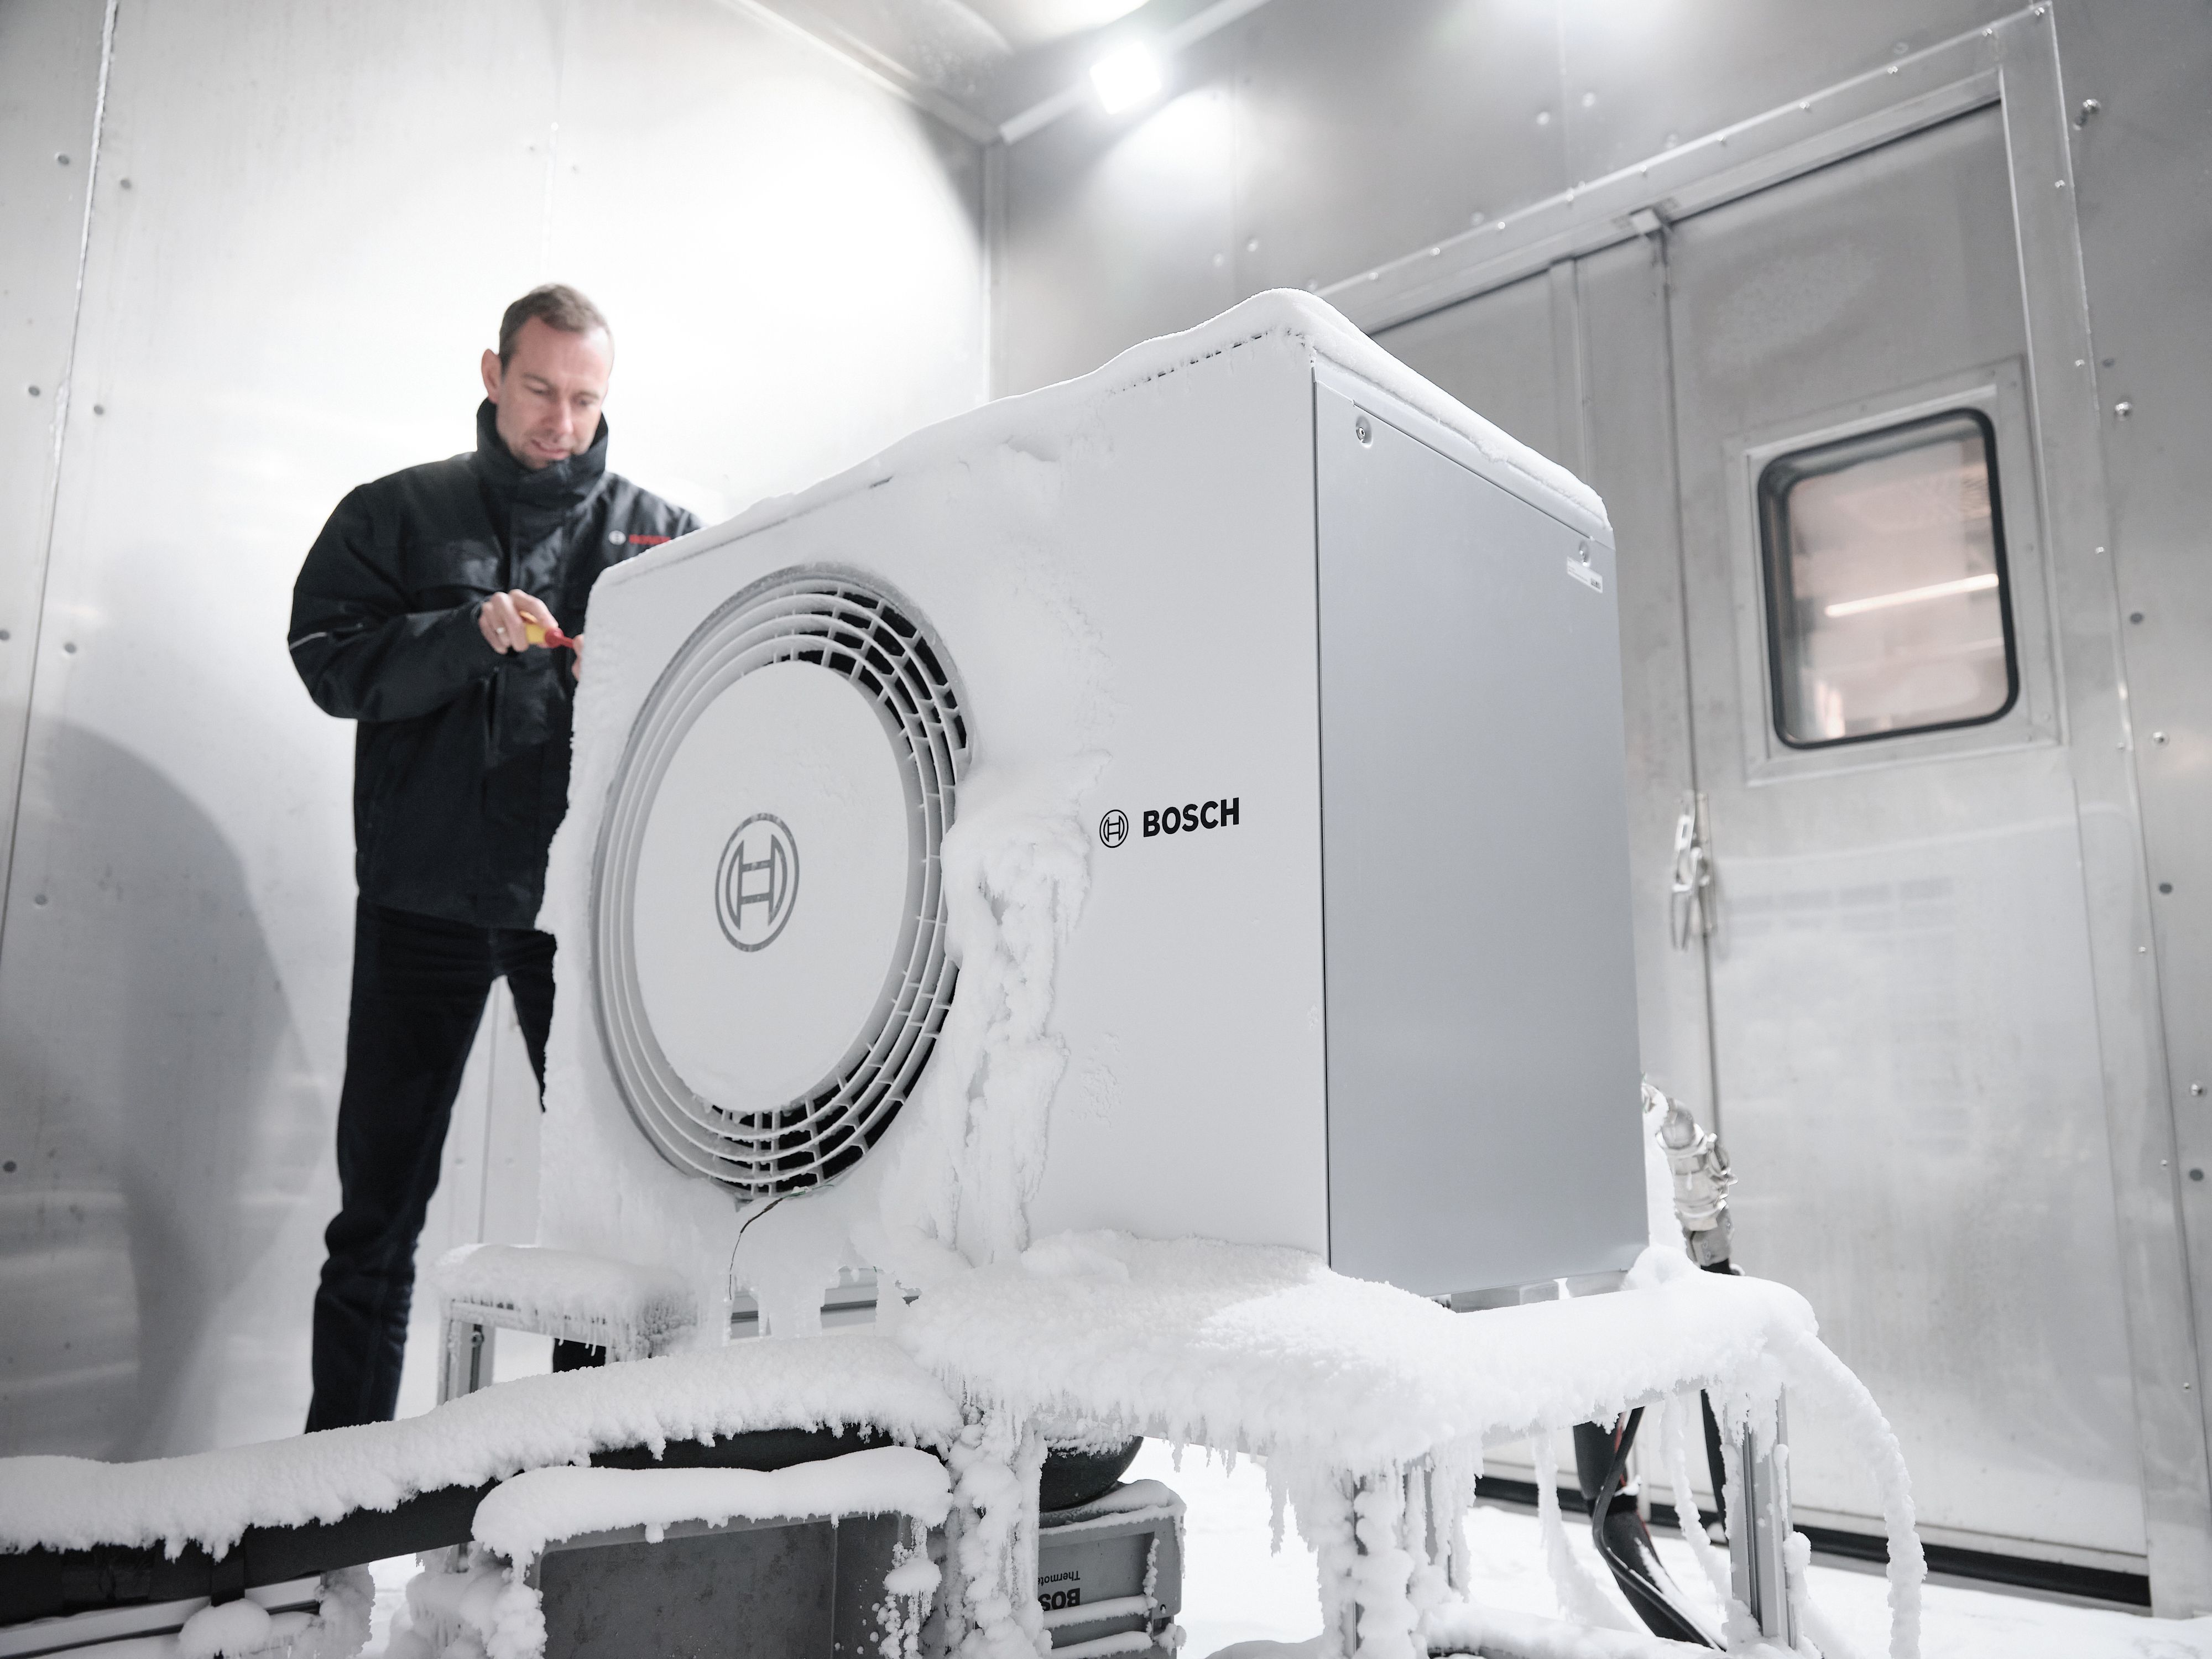 Le pompe di calore Bosch vengono testate nella camera frigorifera. A temperature ben al di sotto dello zero, vengono eseguiti diversi test per simulare il funzionamento quotidiano in condizioni di freddo